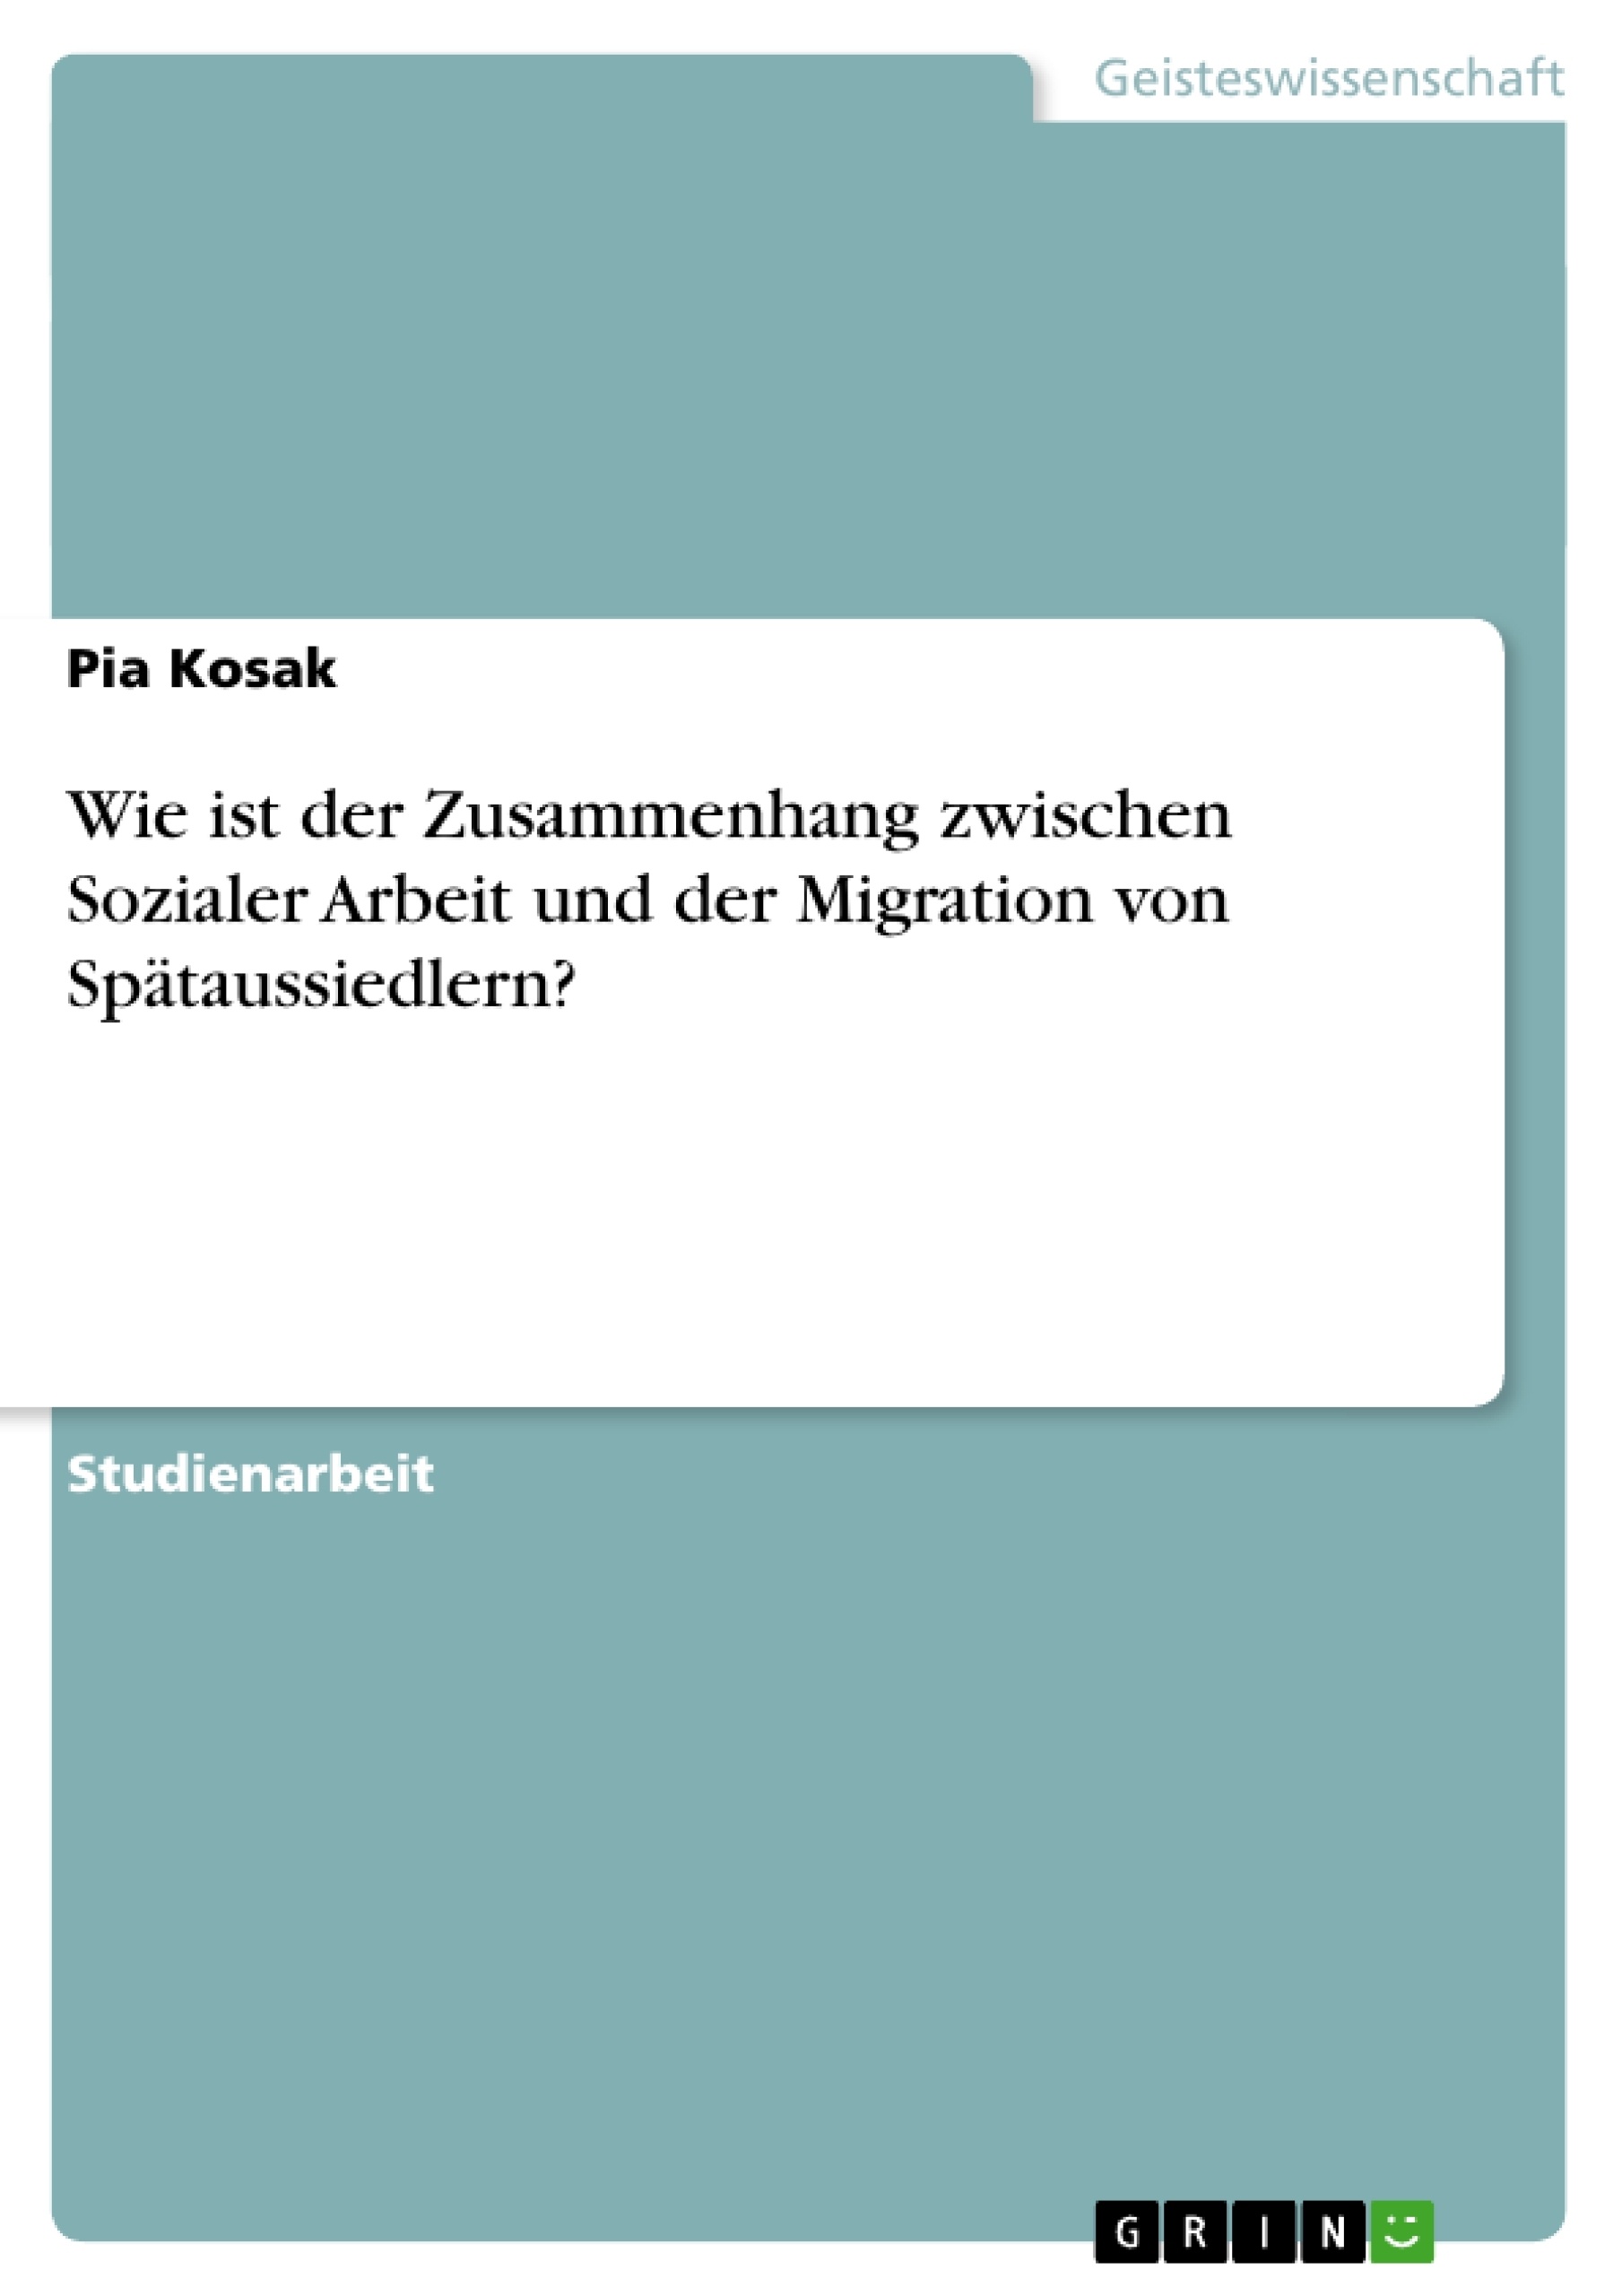 Titel: Wie ist der Zusammenhang zwischen Sozialer Arbeit und der Migration von Spätaussiedlern?